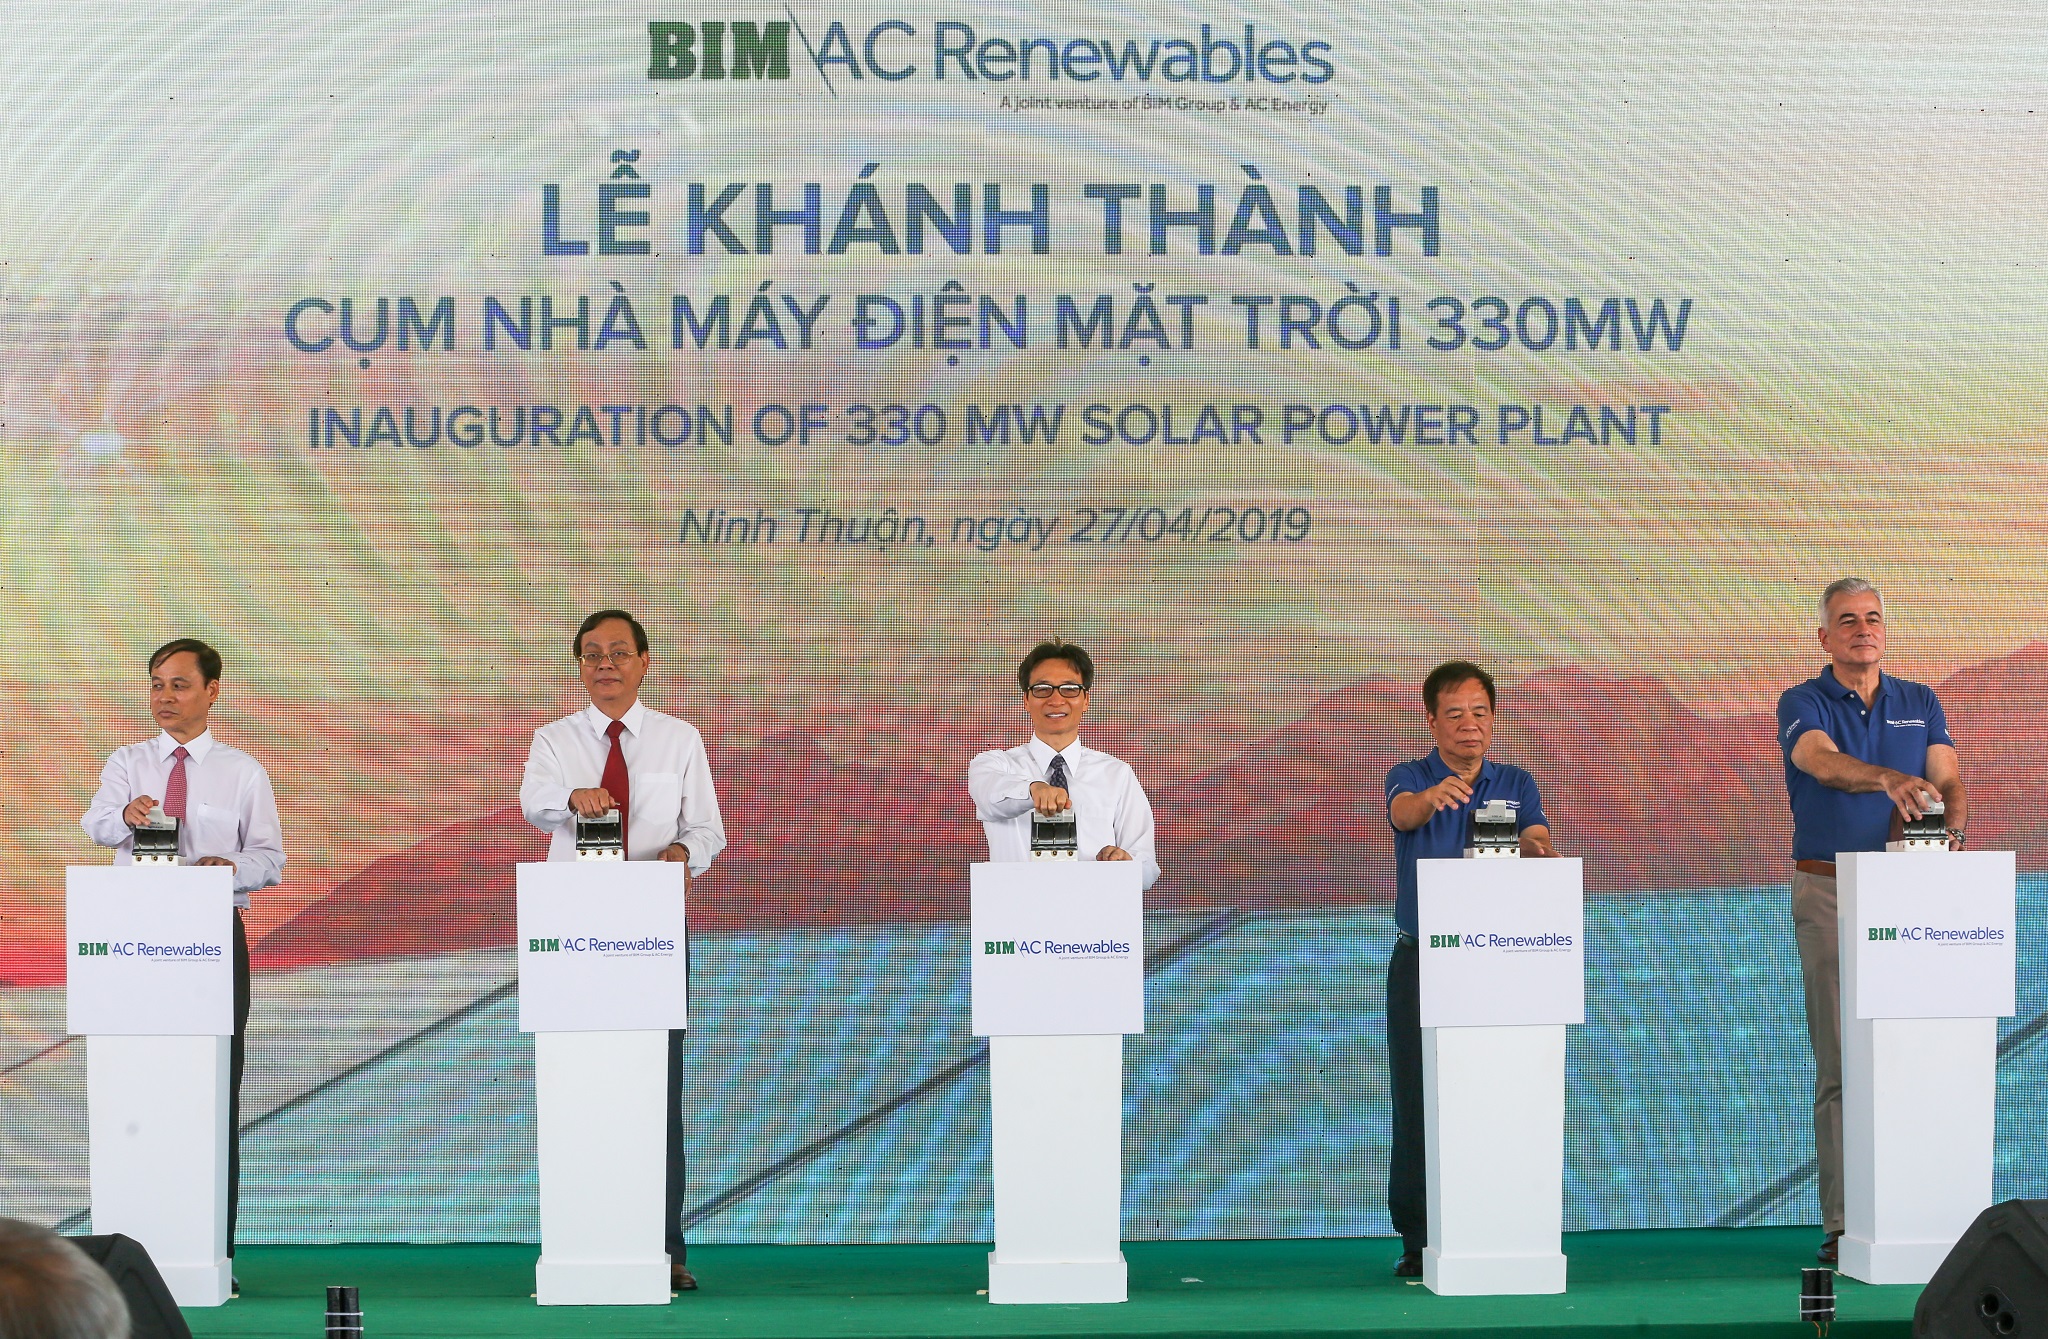 Cụm nhà máy điện mặt trời 330MWP chính thức hòa lưới điện Quốc gia